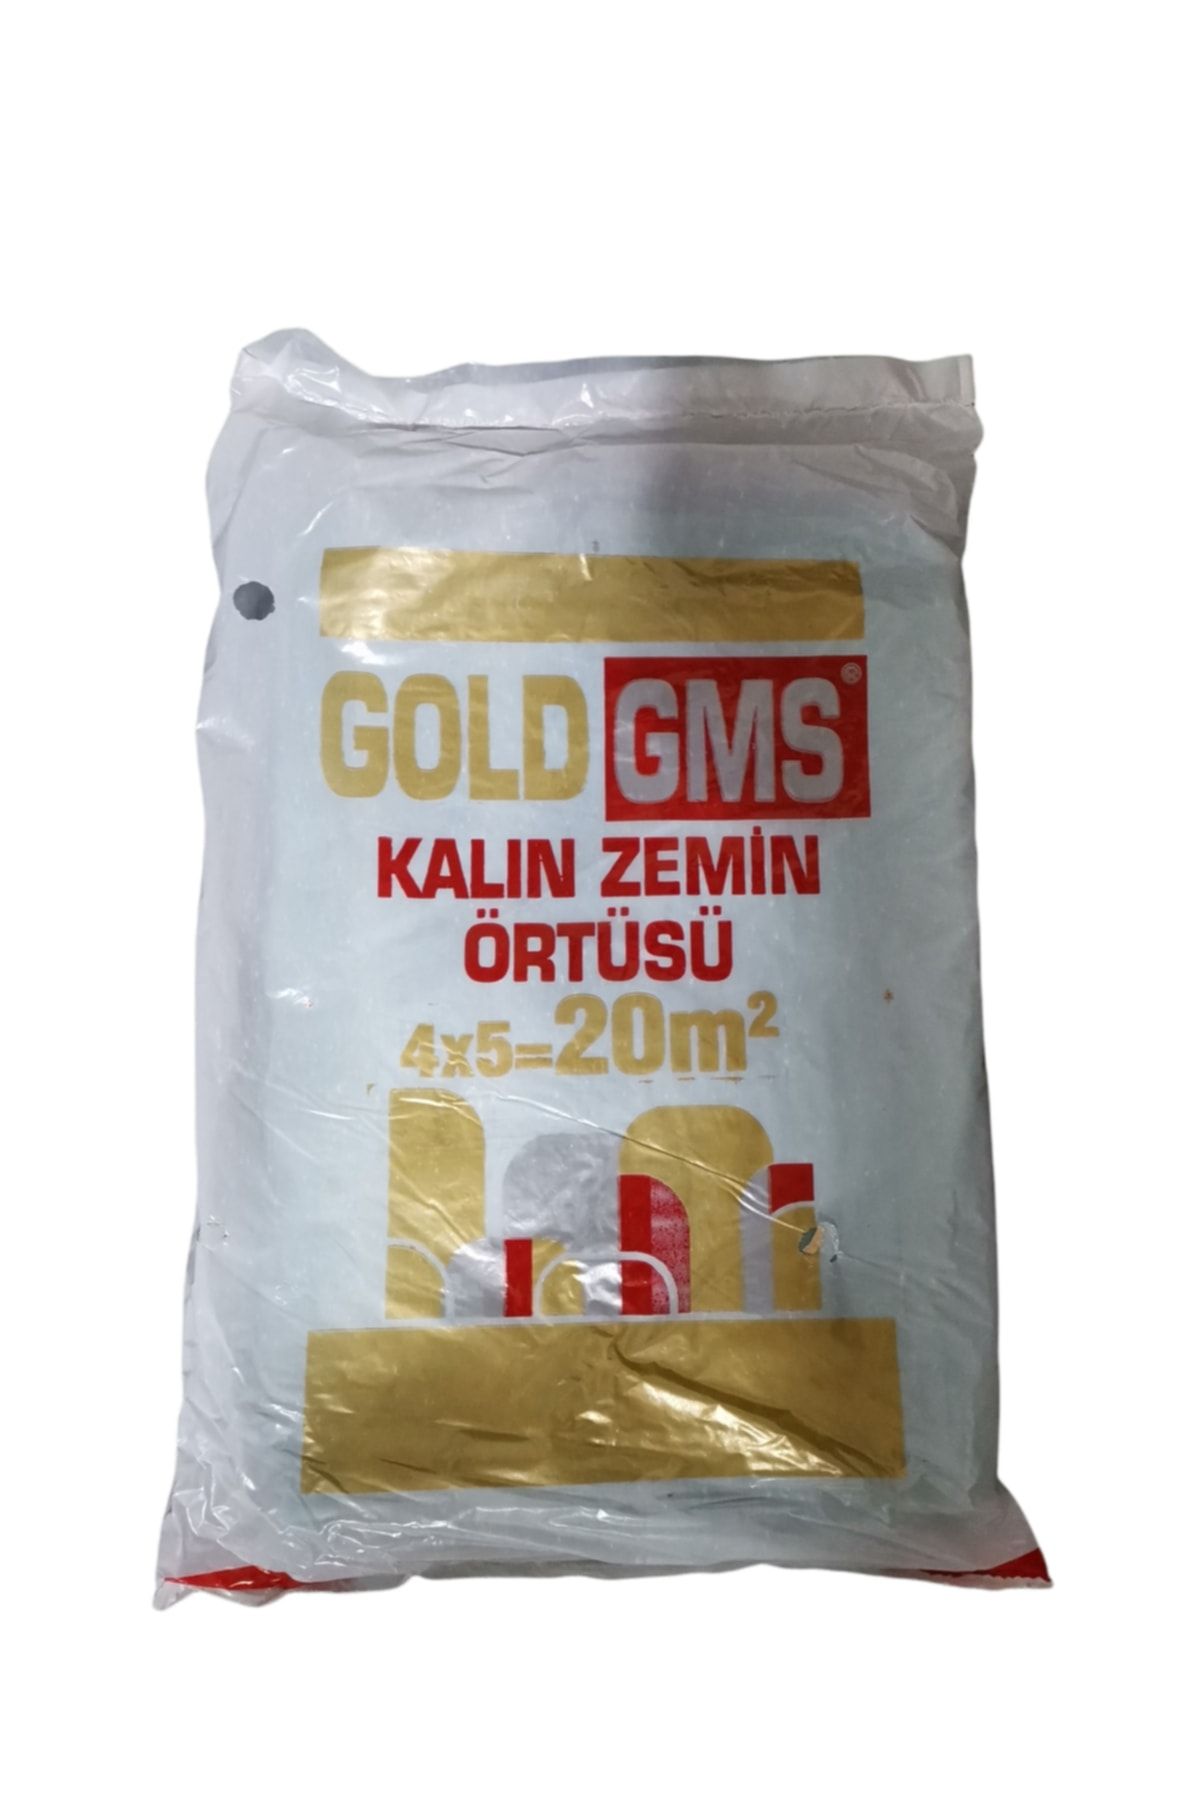 Gms Gold Boya Badana Örtüsü Koruyucu Kalın Zemin Örtüsü 20 M2 ( 4 X 5 M.)